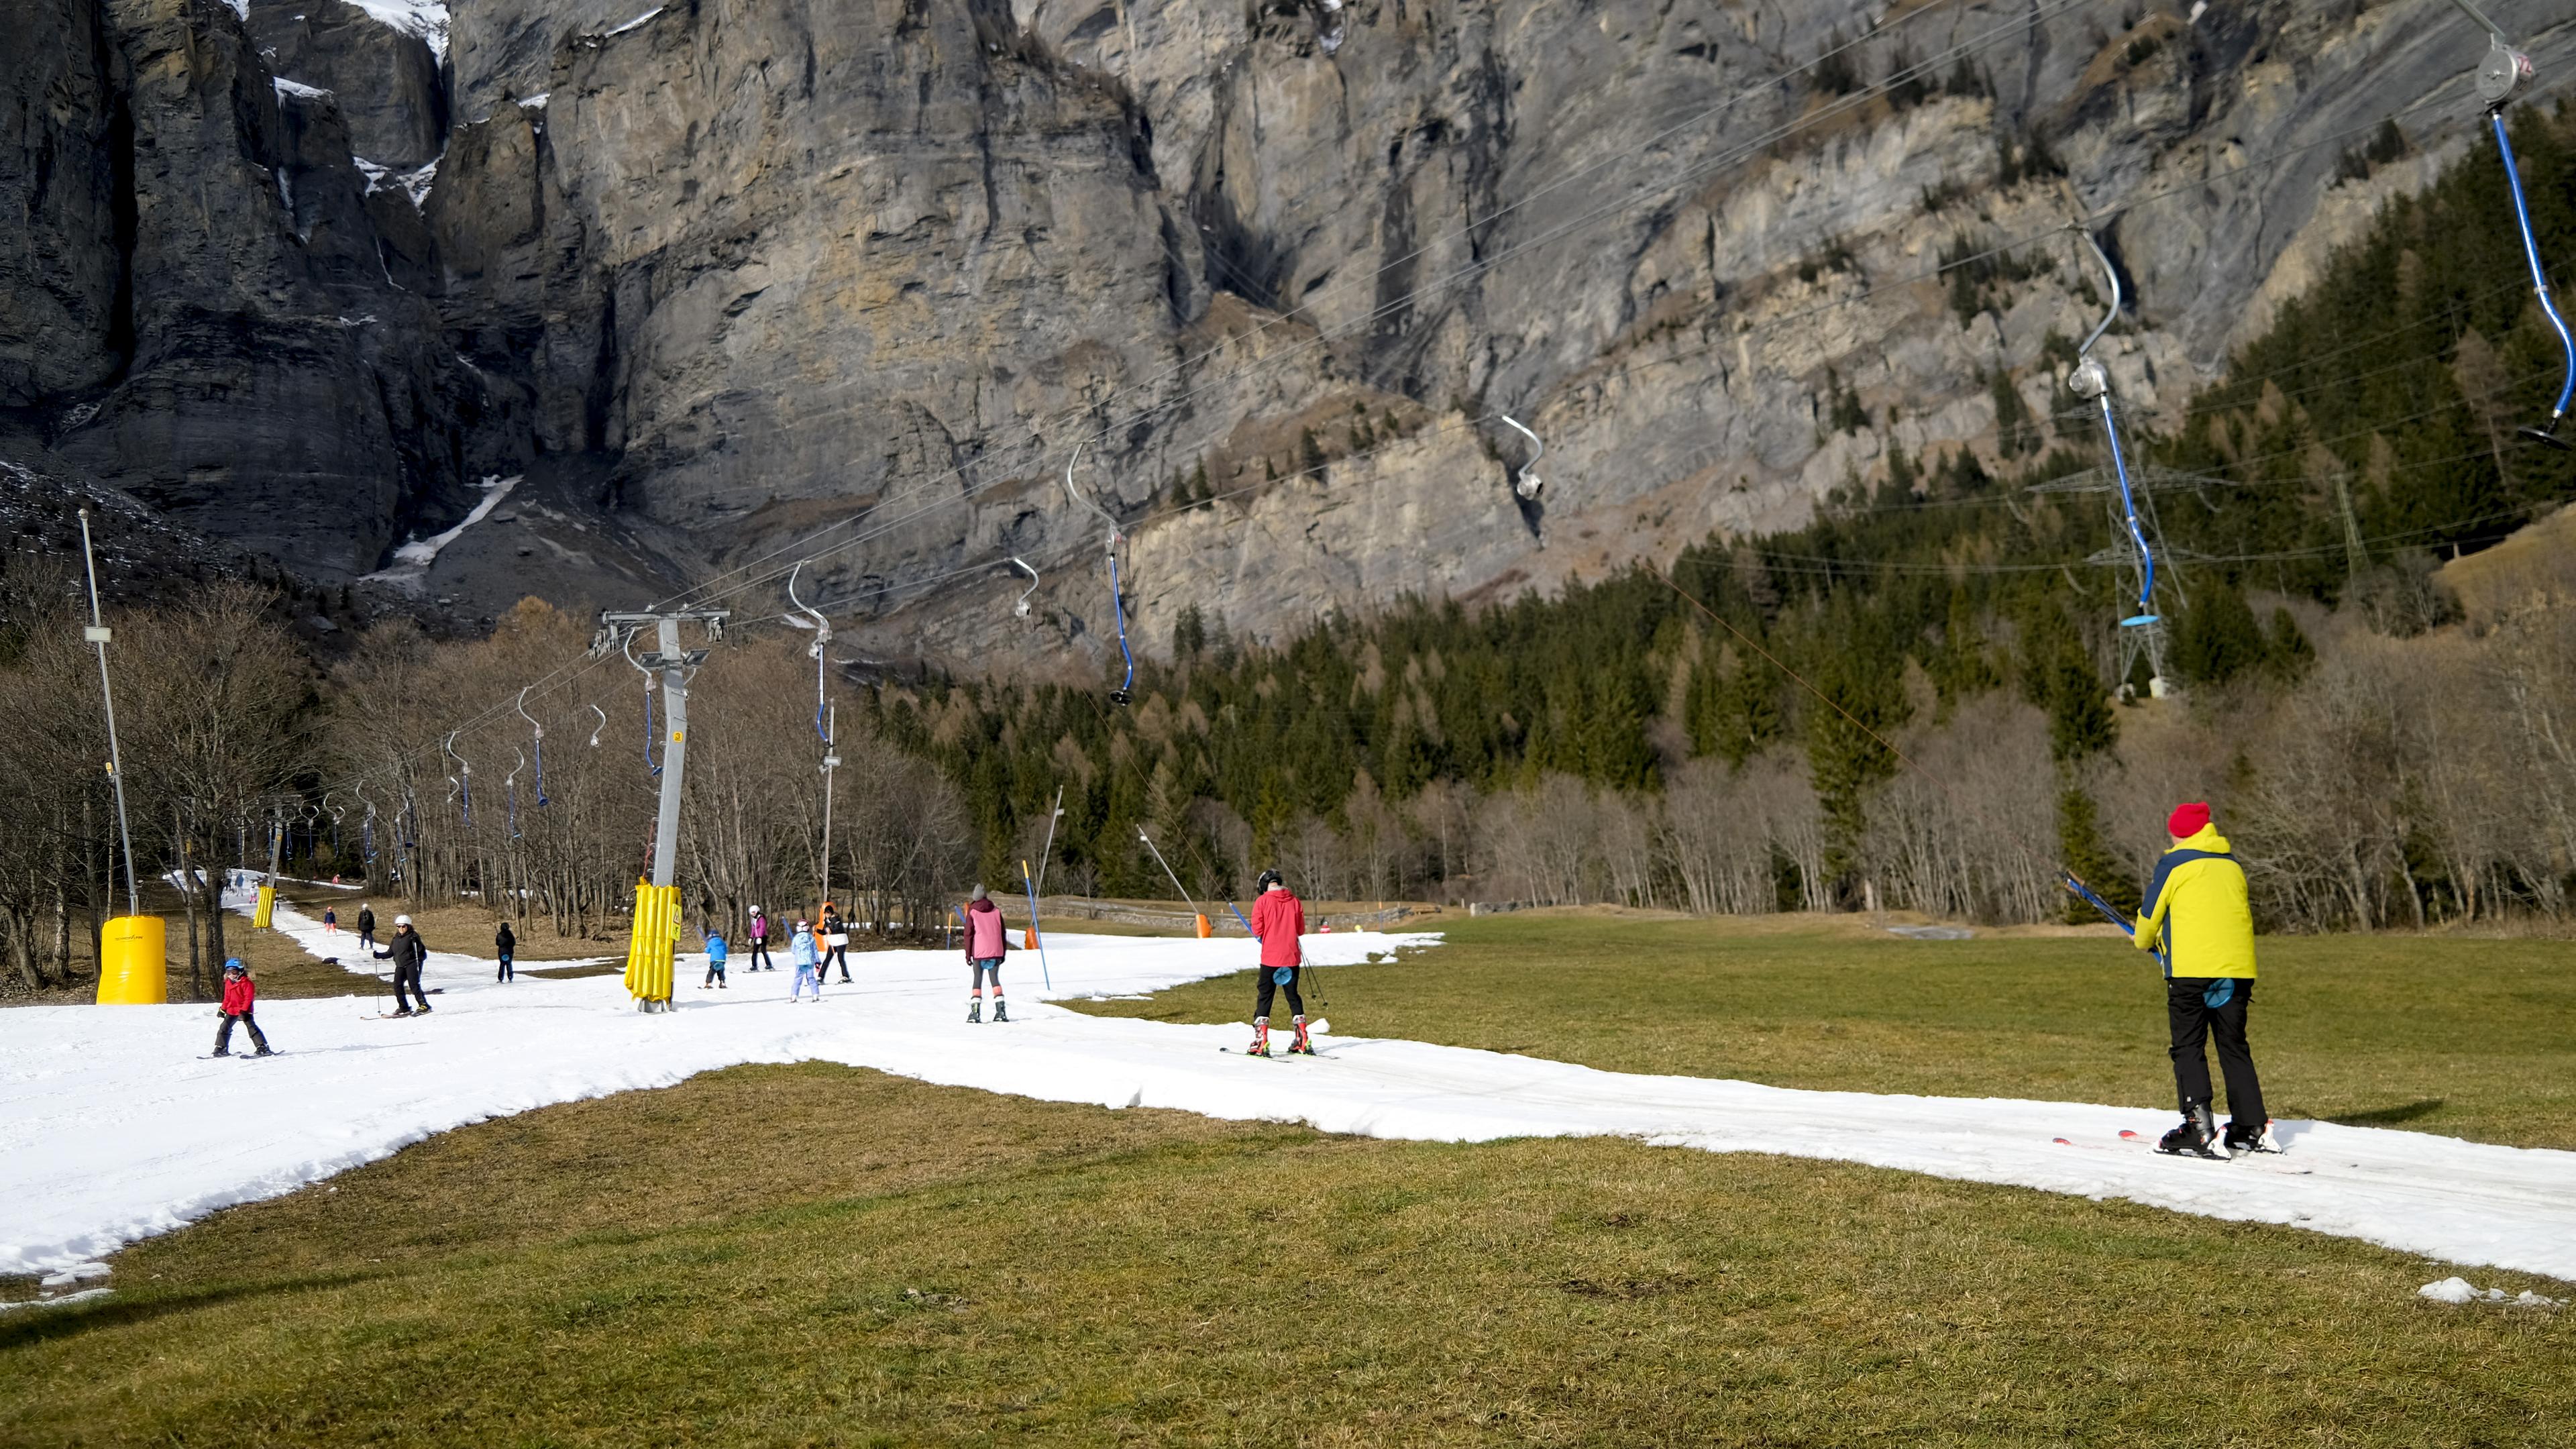 Schweiz, Leukerbad: Skifahrer benutzen einen Lift auf einer künstlich beschneiten Skipiste inmitten eines schneefreien Feldes auf 1411 Metern über dem Meeresspiegel.